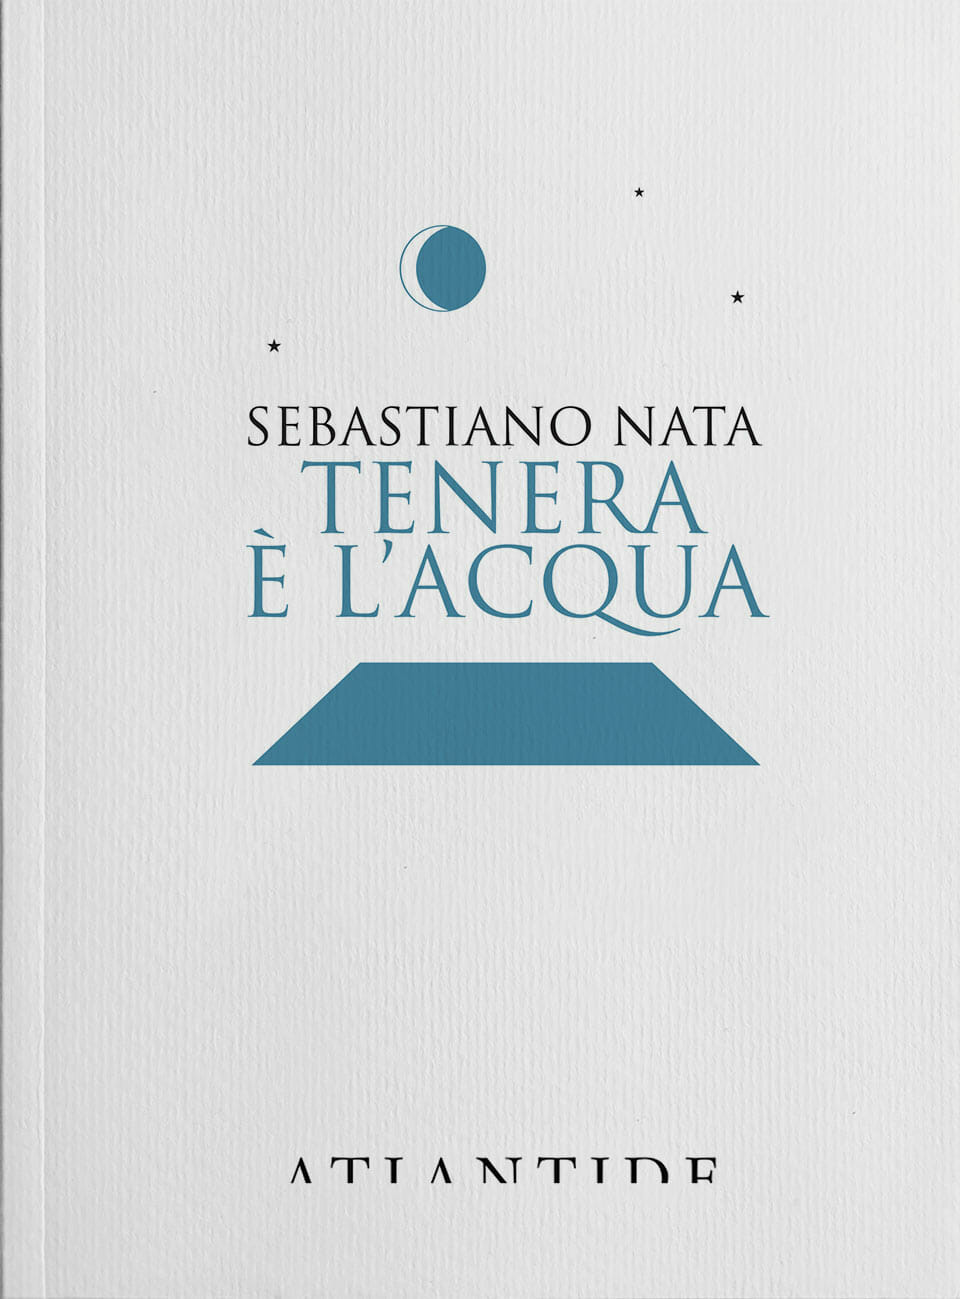 Sebastiano Nata Tenera è l'acqua